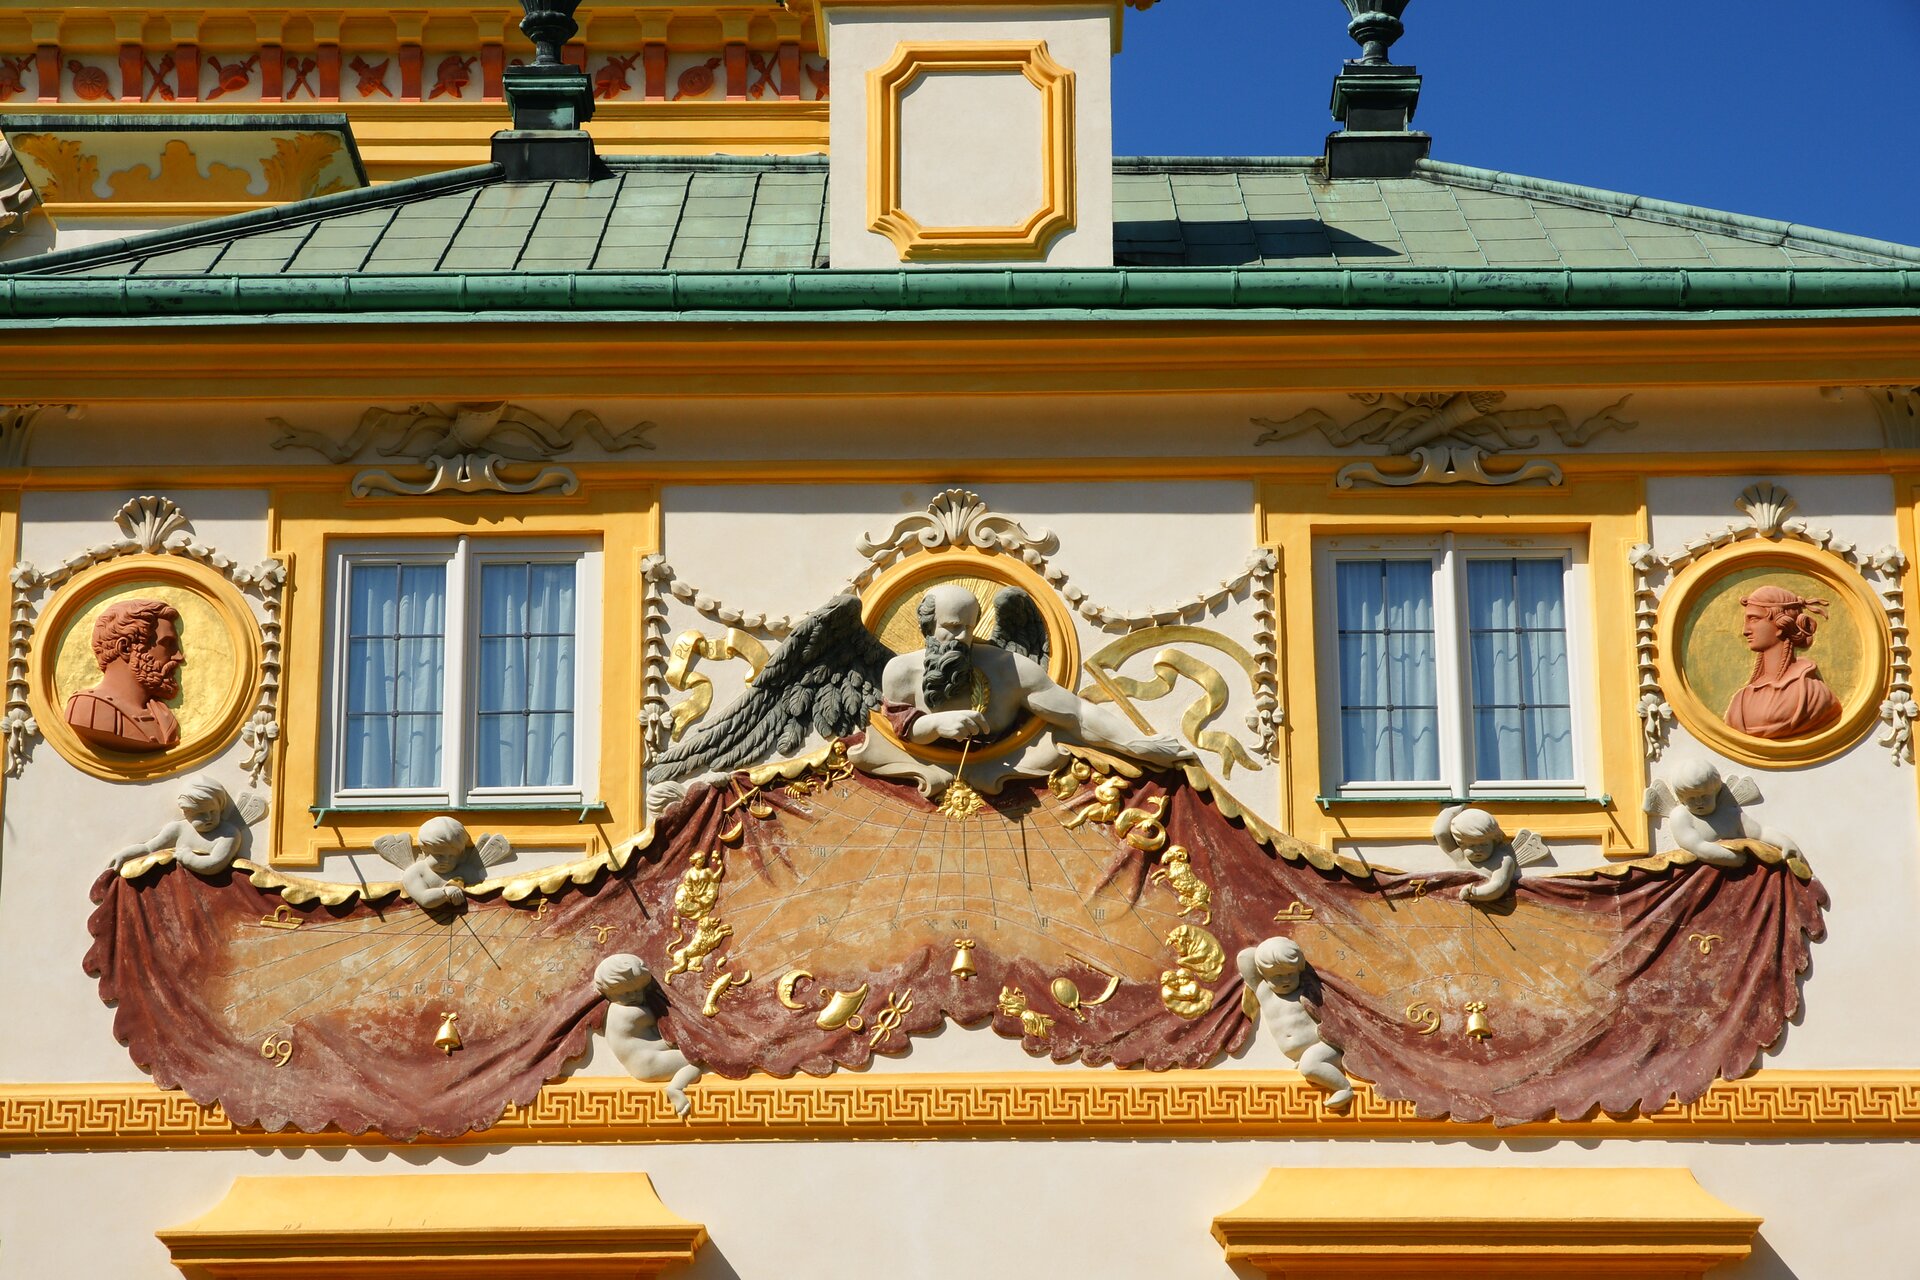 Fotografia autorstwa Bosia2011 przedstawia widok na zegar słoneczny, który znajduje się na elewacji Pałacu Jana III Sobieskiego. Zegar składa się z kilku części – Figury mężczyzny w podeszłym wieku, który ma bardzo długą brodę i siwe skrzydła i spogląda się na kupidyny. Poniżej figury znajduje się złota część płaskorzeźby imitująca płótno na którym znajdują się wskazówki zegara słonecznego. 